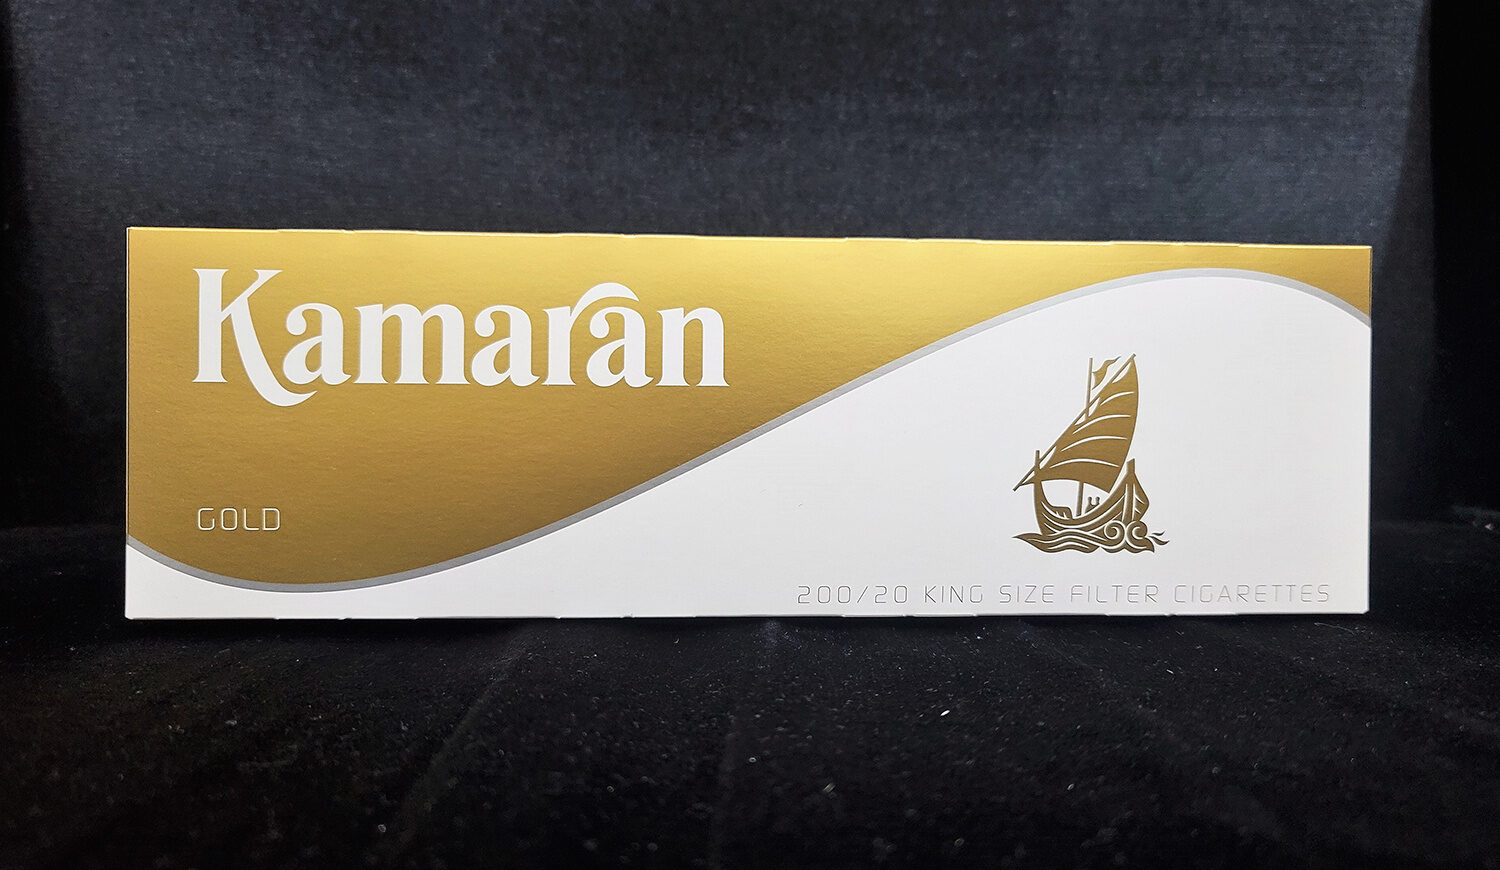 Kamaran Gold Cigarettes - Product - en